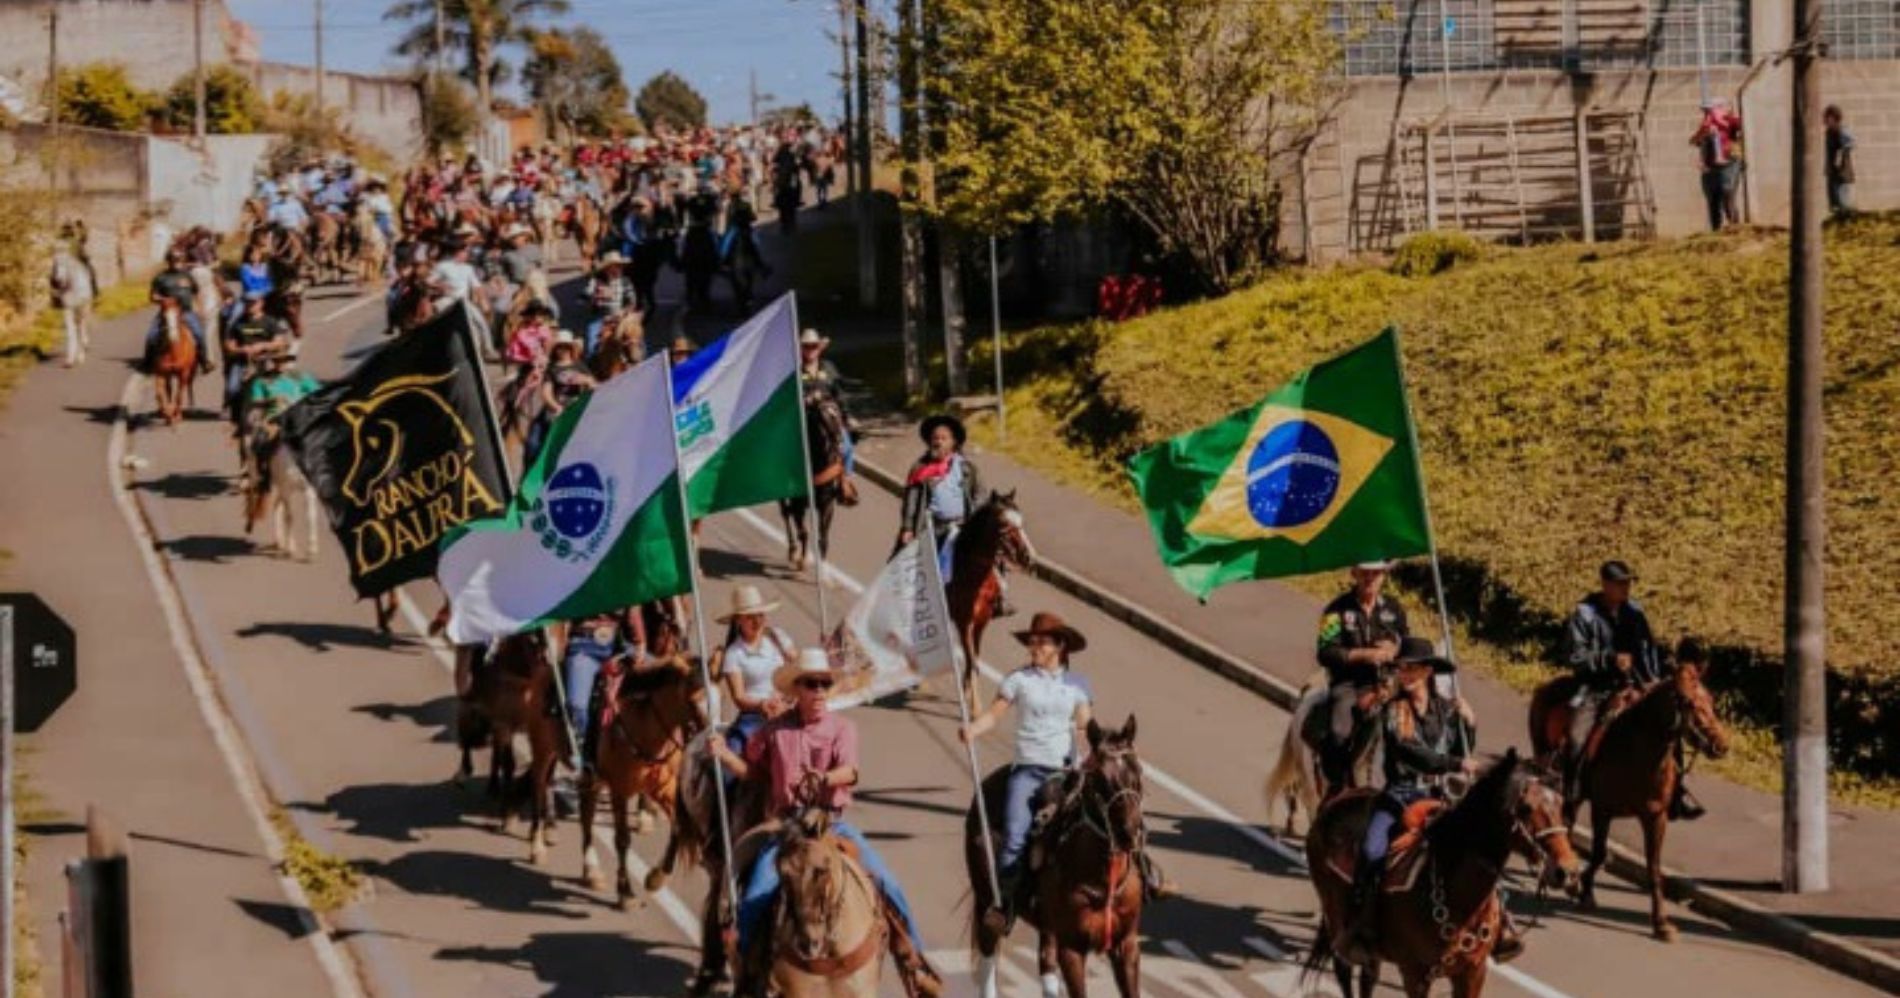 3ª Cavalgada Rancho Dalprá deve reunir 10 mil pessoas em Campina Grande do Sul